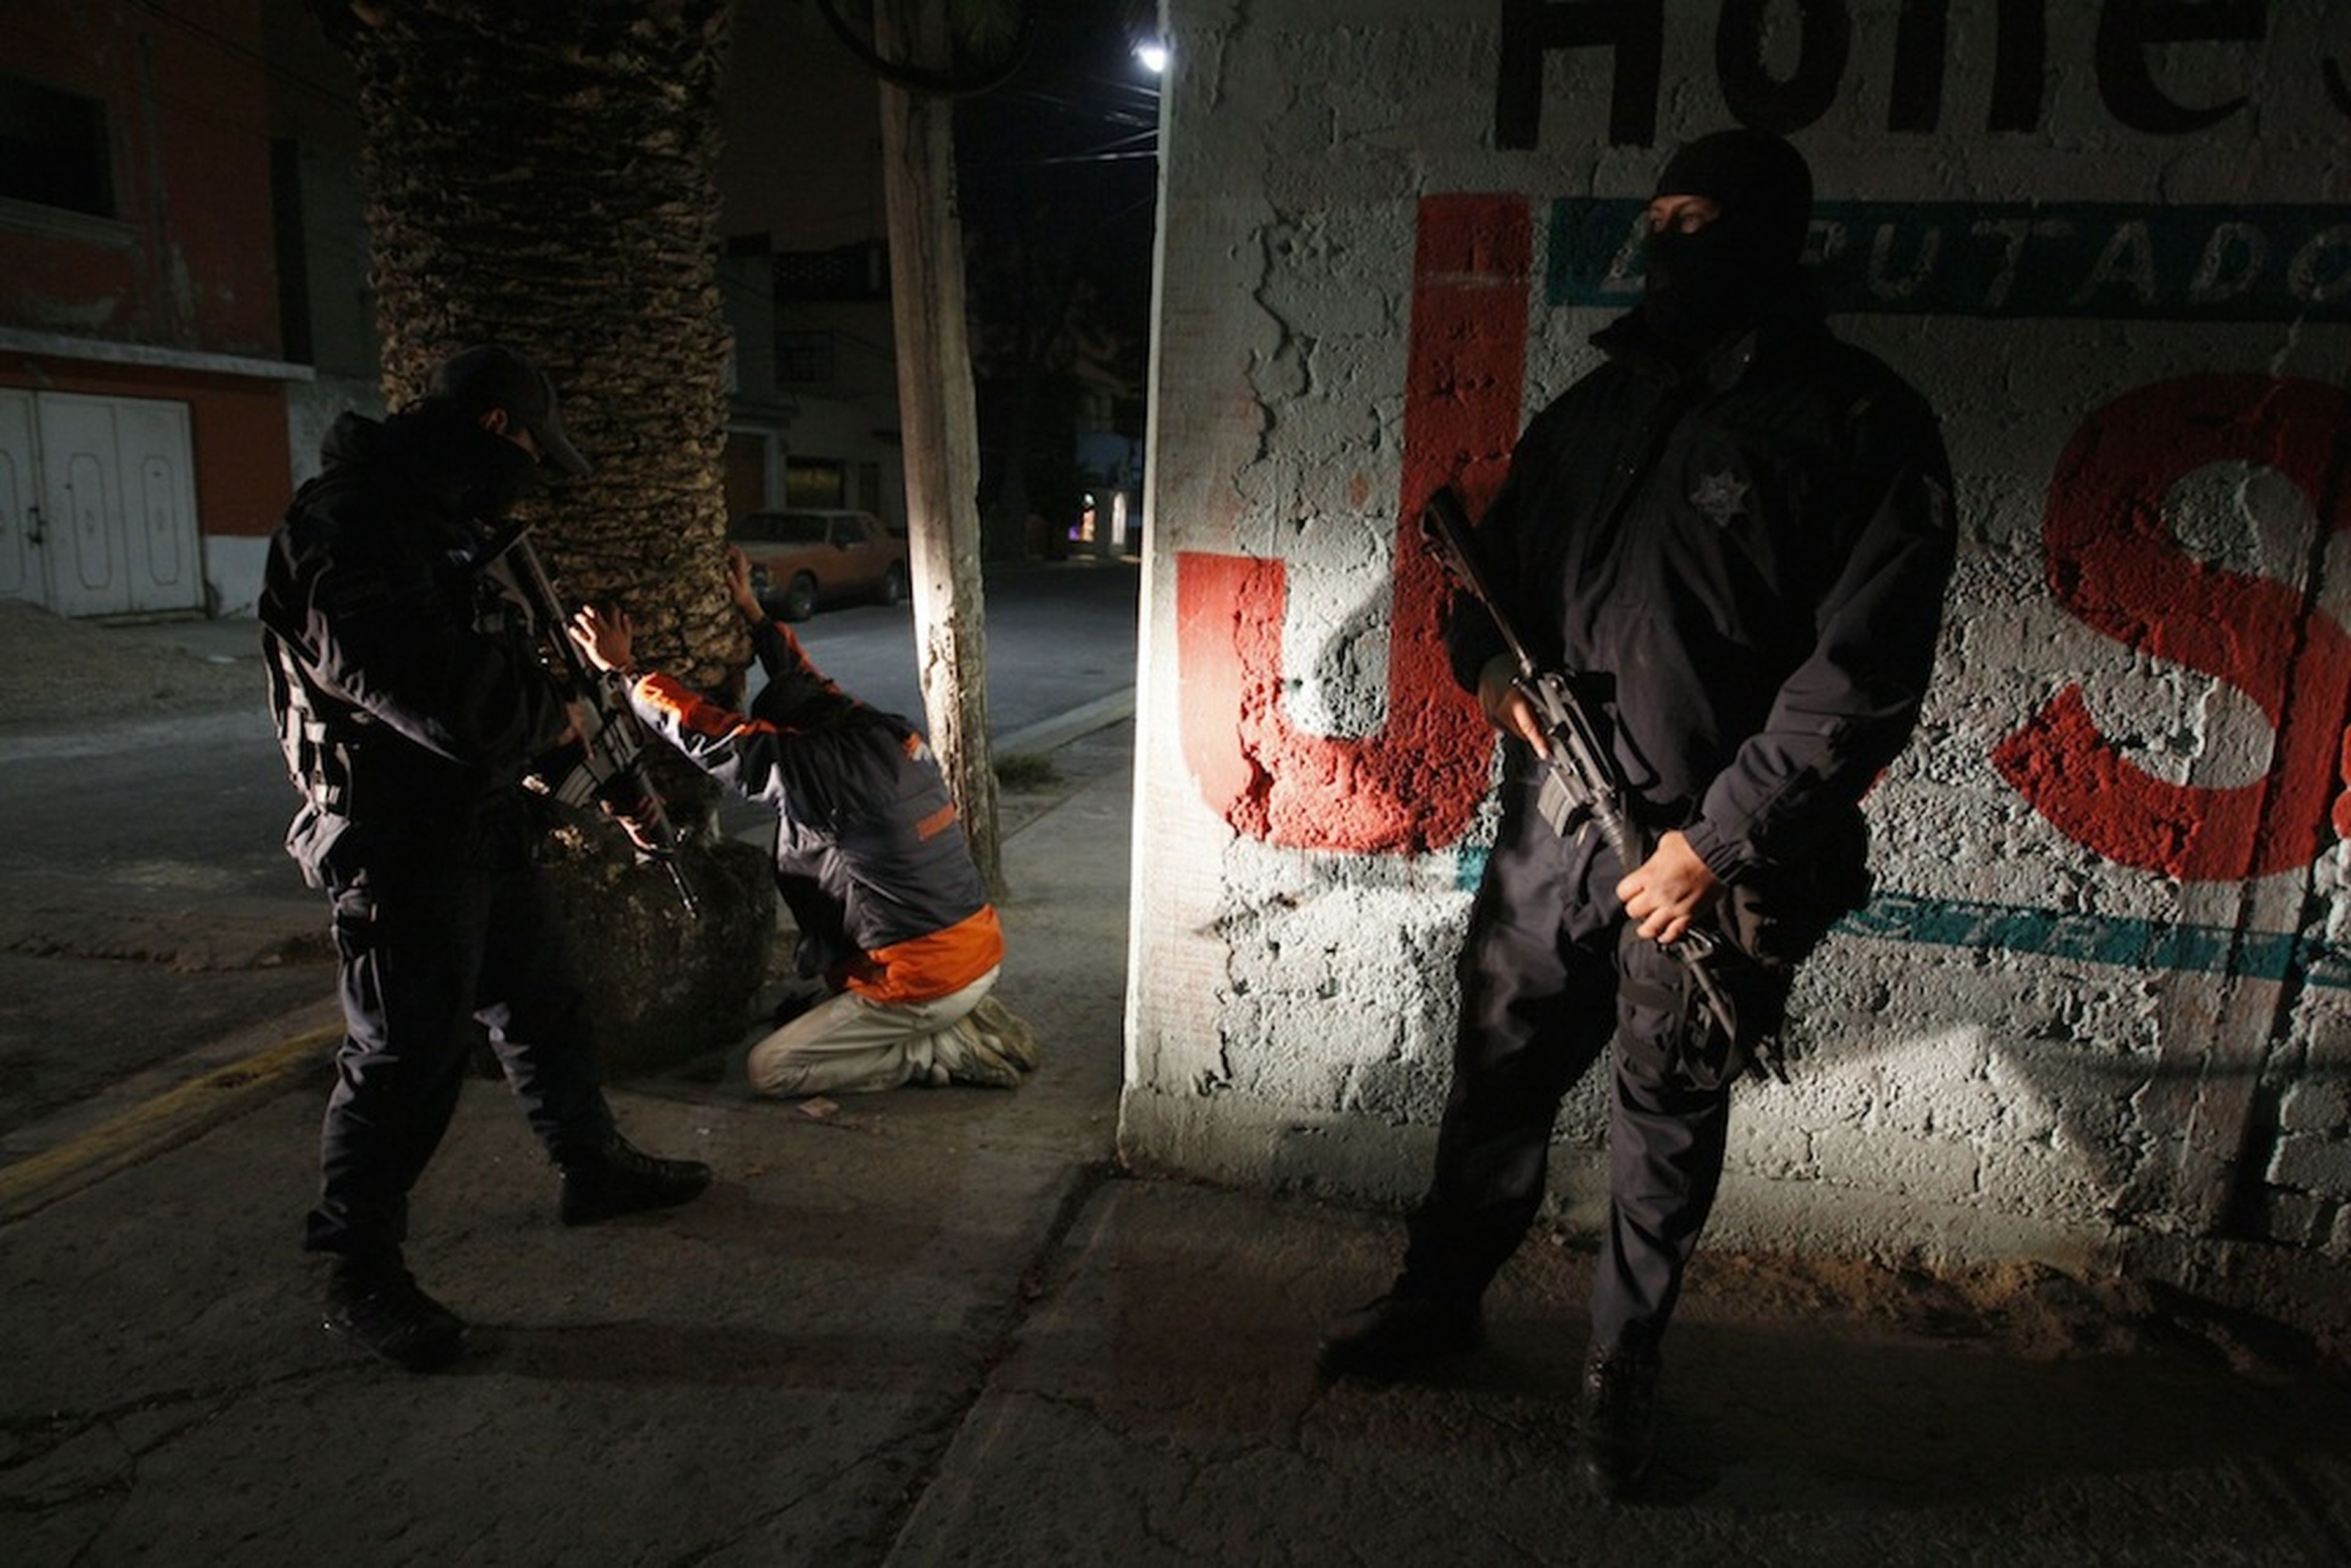 La Policía Federal realiza un registro en busca de drogas y armas en el transcurso de una operación antidroga en Ecatepec (México) el 13 de noviembre de 2009.